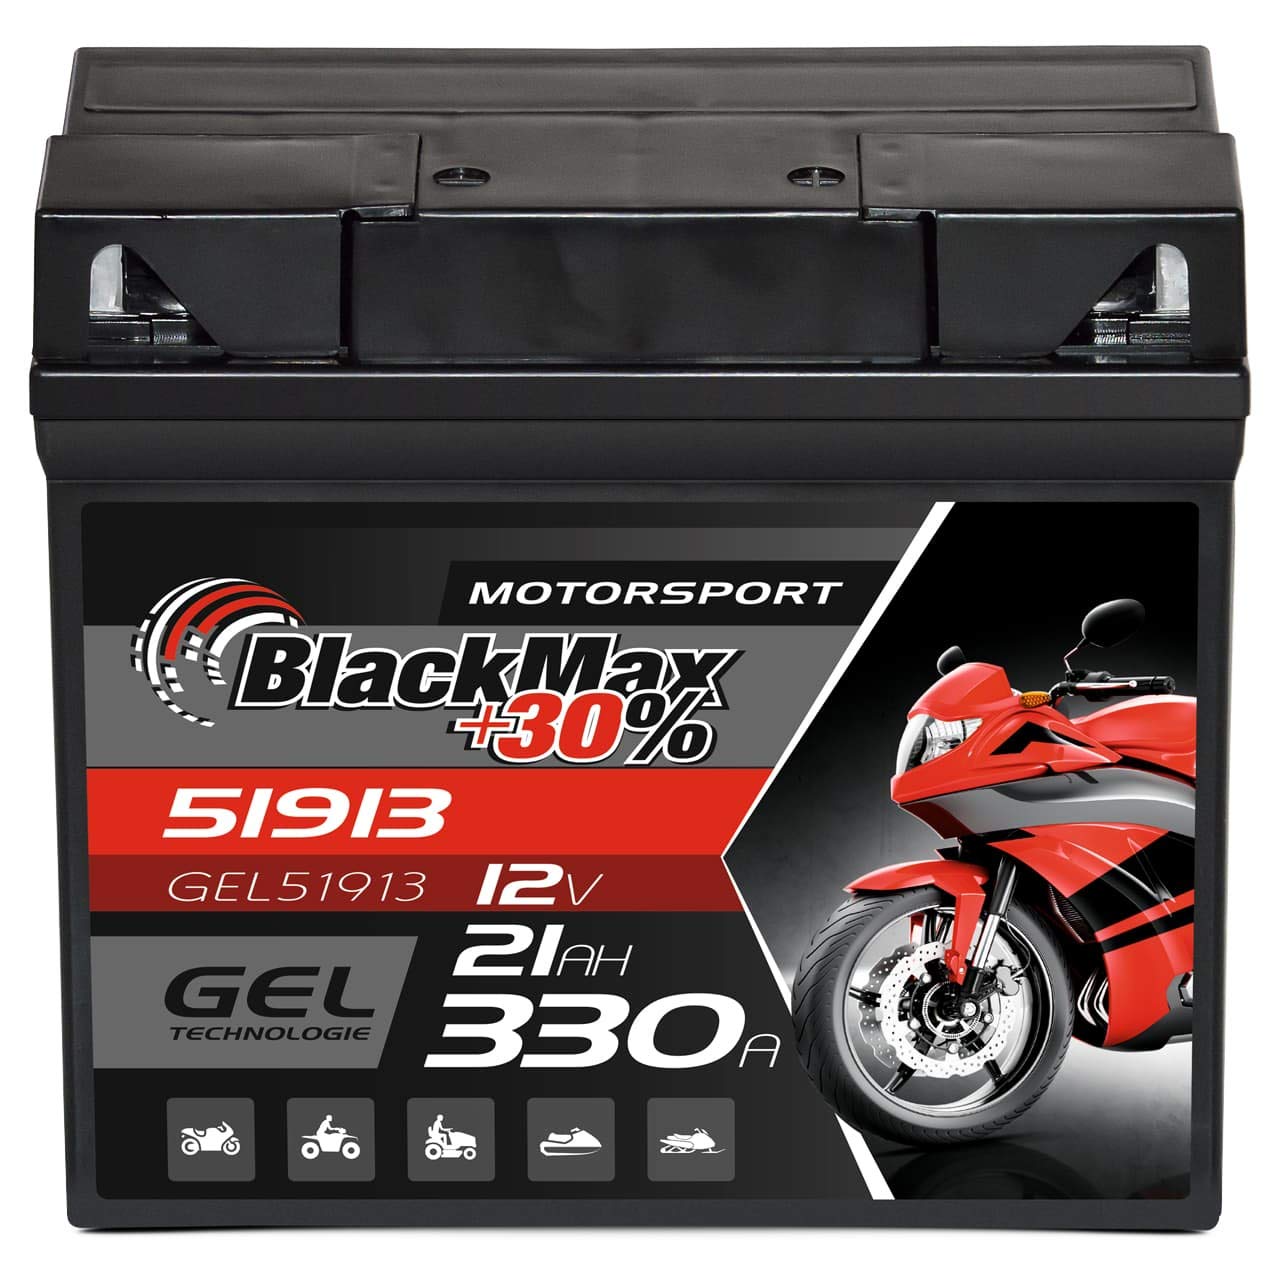 BlackMax G19 51913 Motorradbatterie GEL 12V 21Ah Batterie 519013017 ABS 19Ah von BlackMax